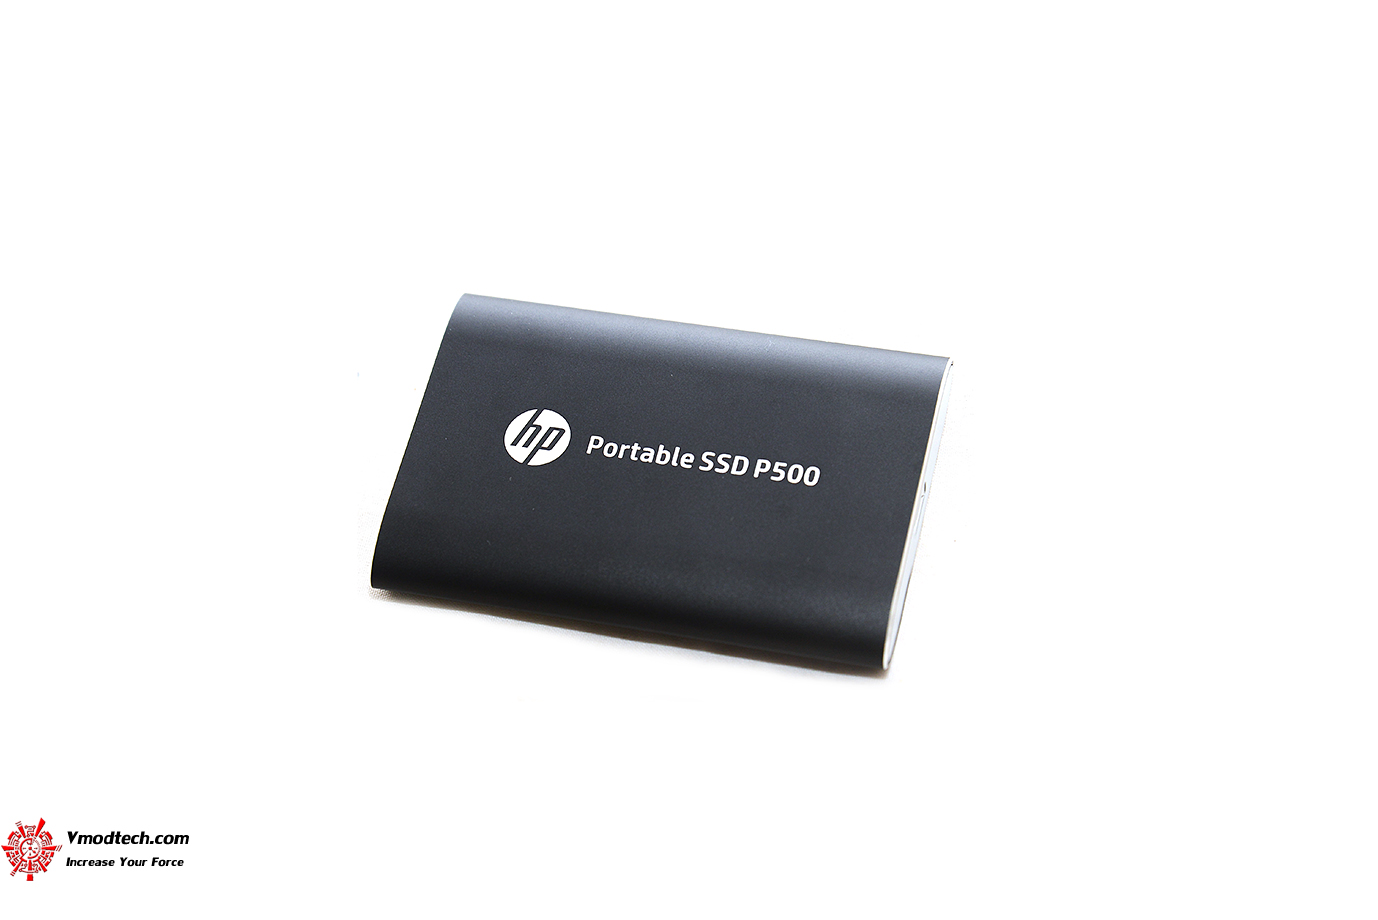 dsc 9068 HP Portable SSD P500 250GB Review